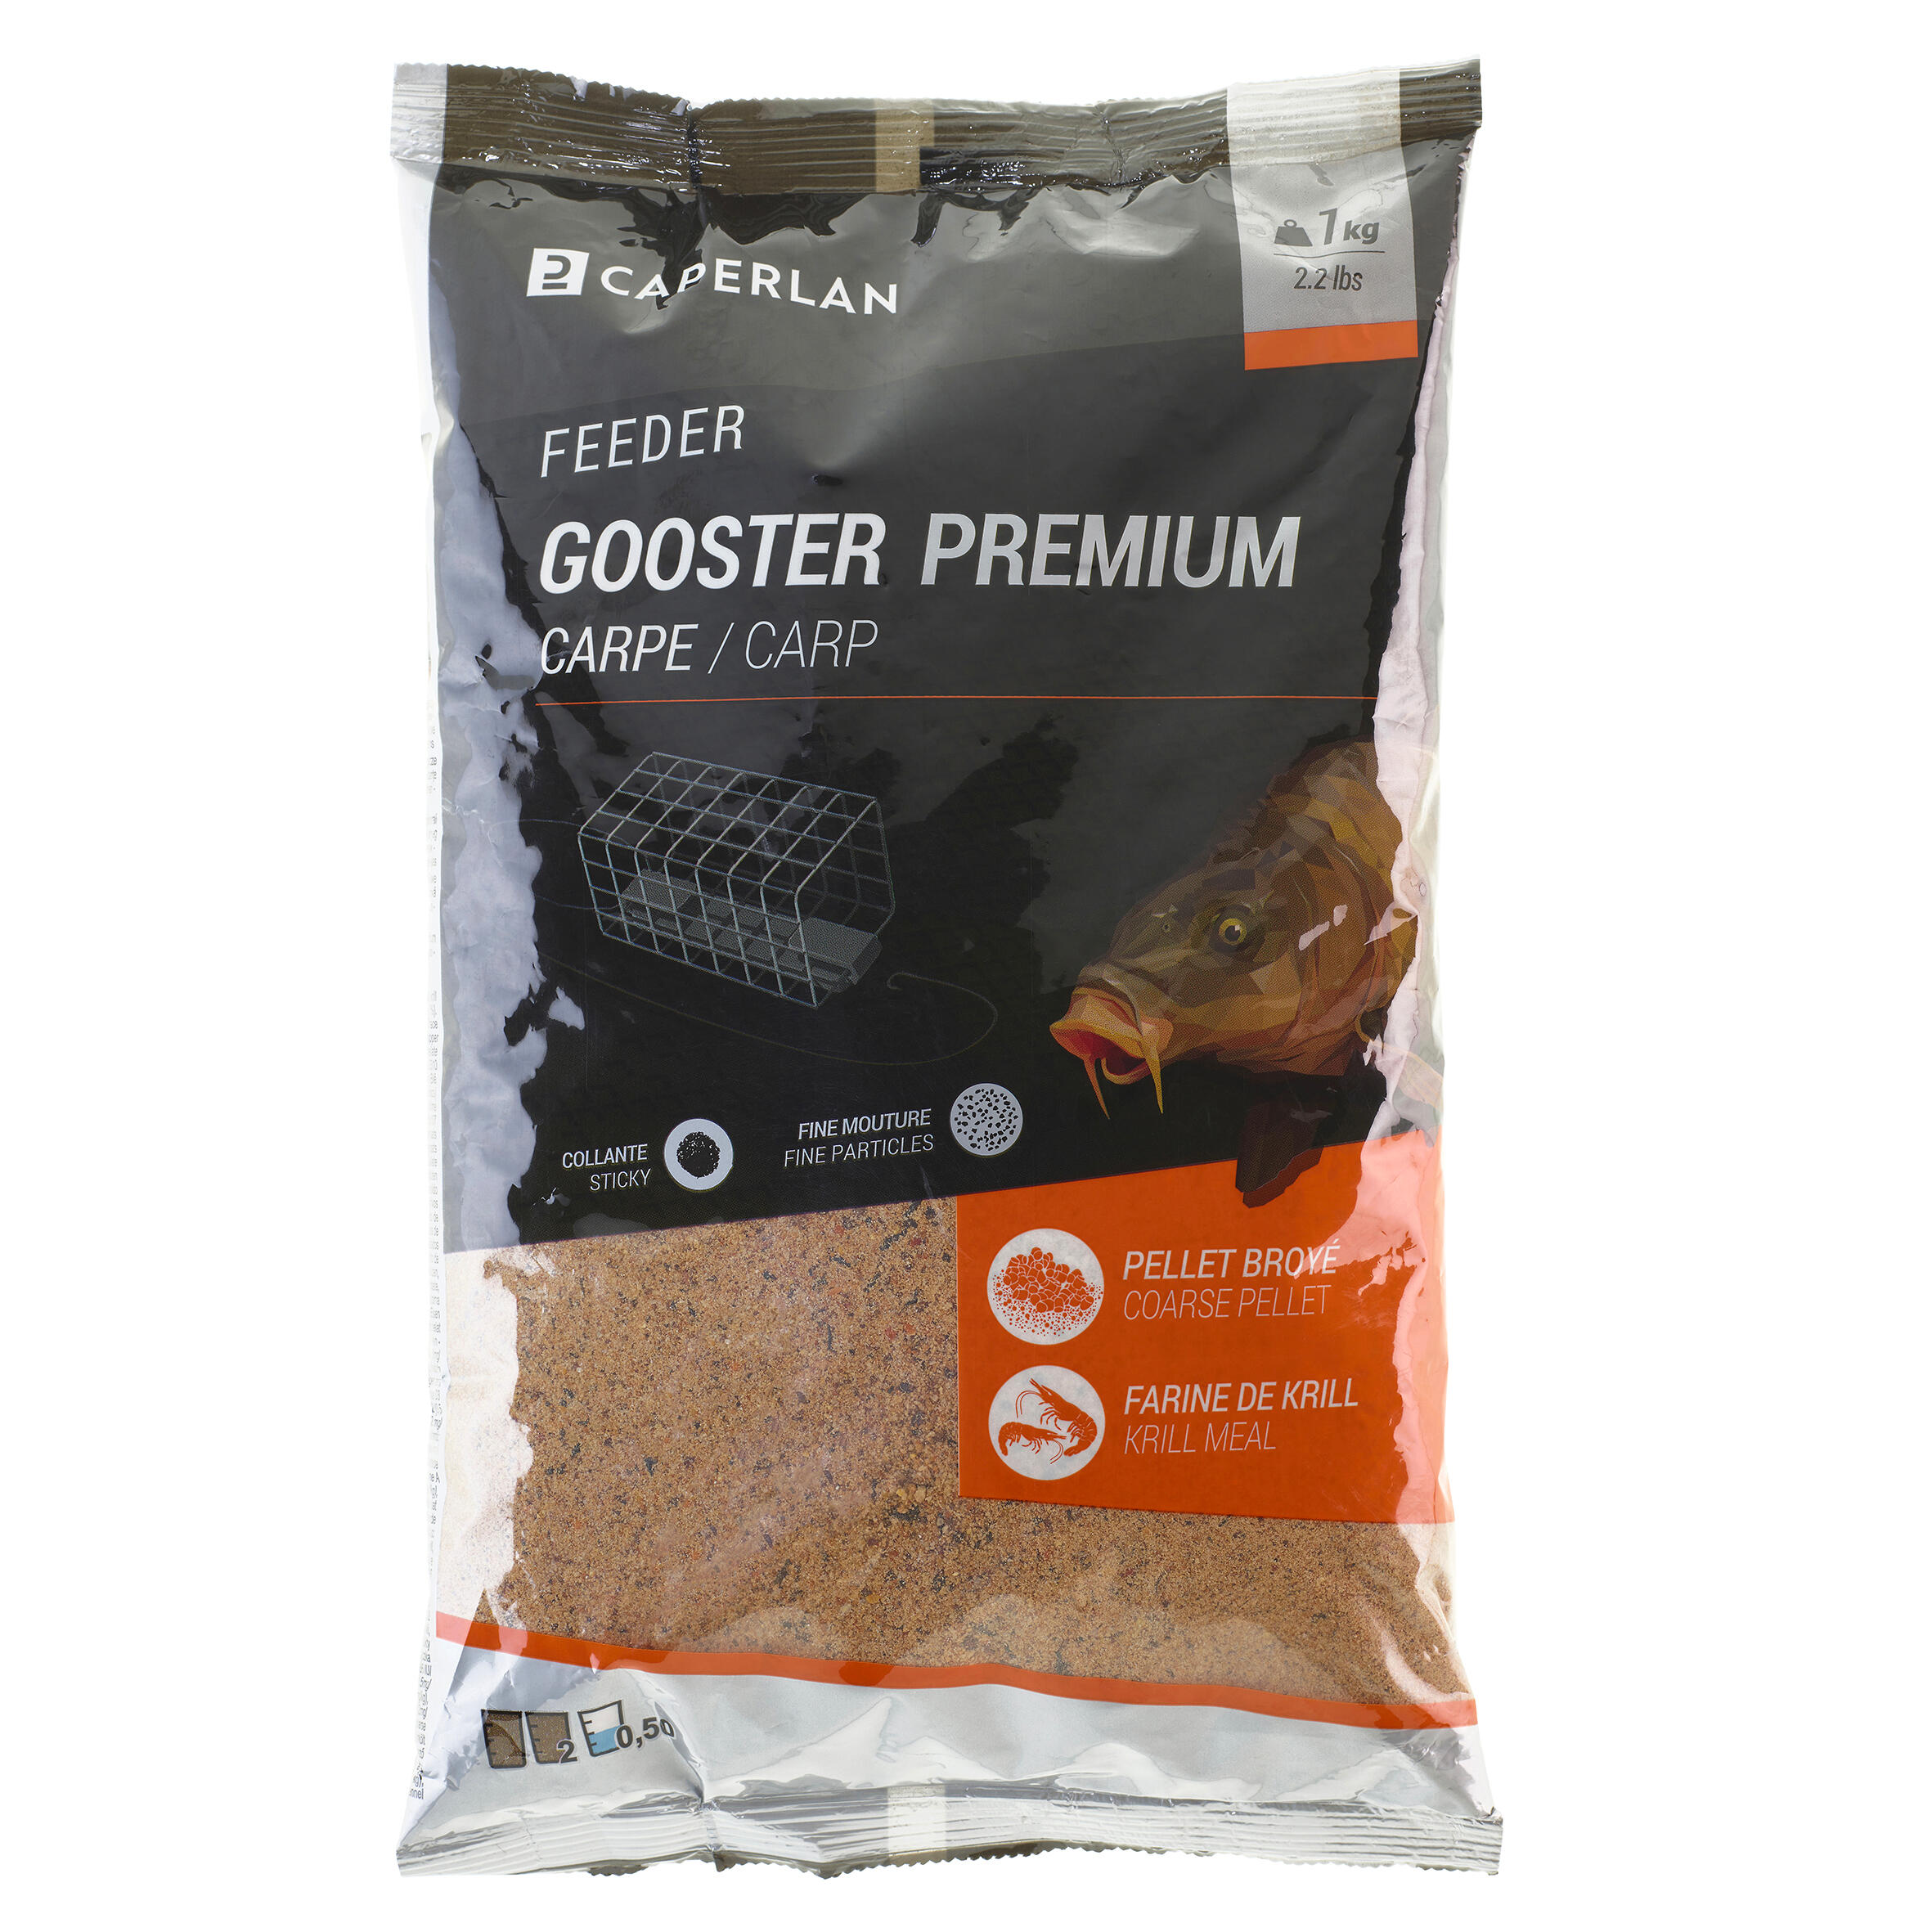 Gooster premium carp feeder bait - 1kg 7/7